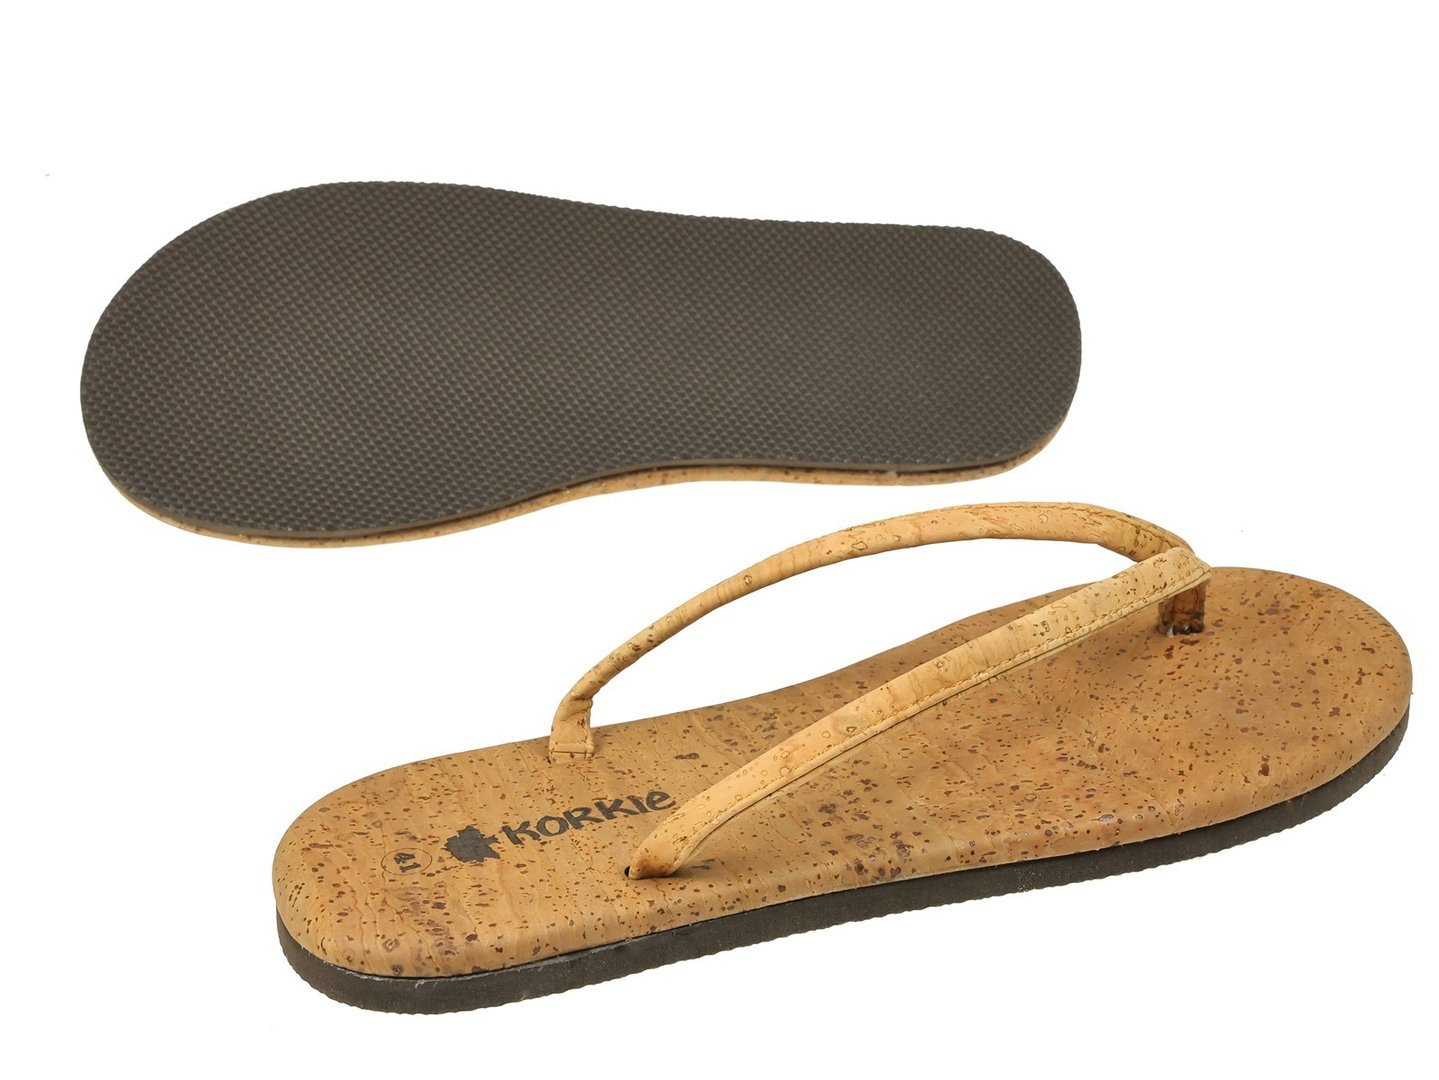 8201 Flip flop bathing shoes 2